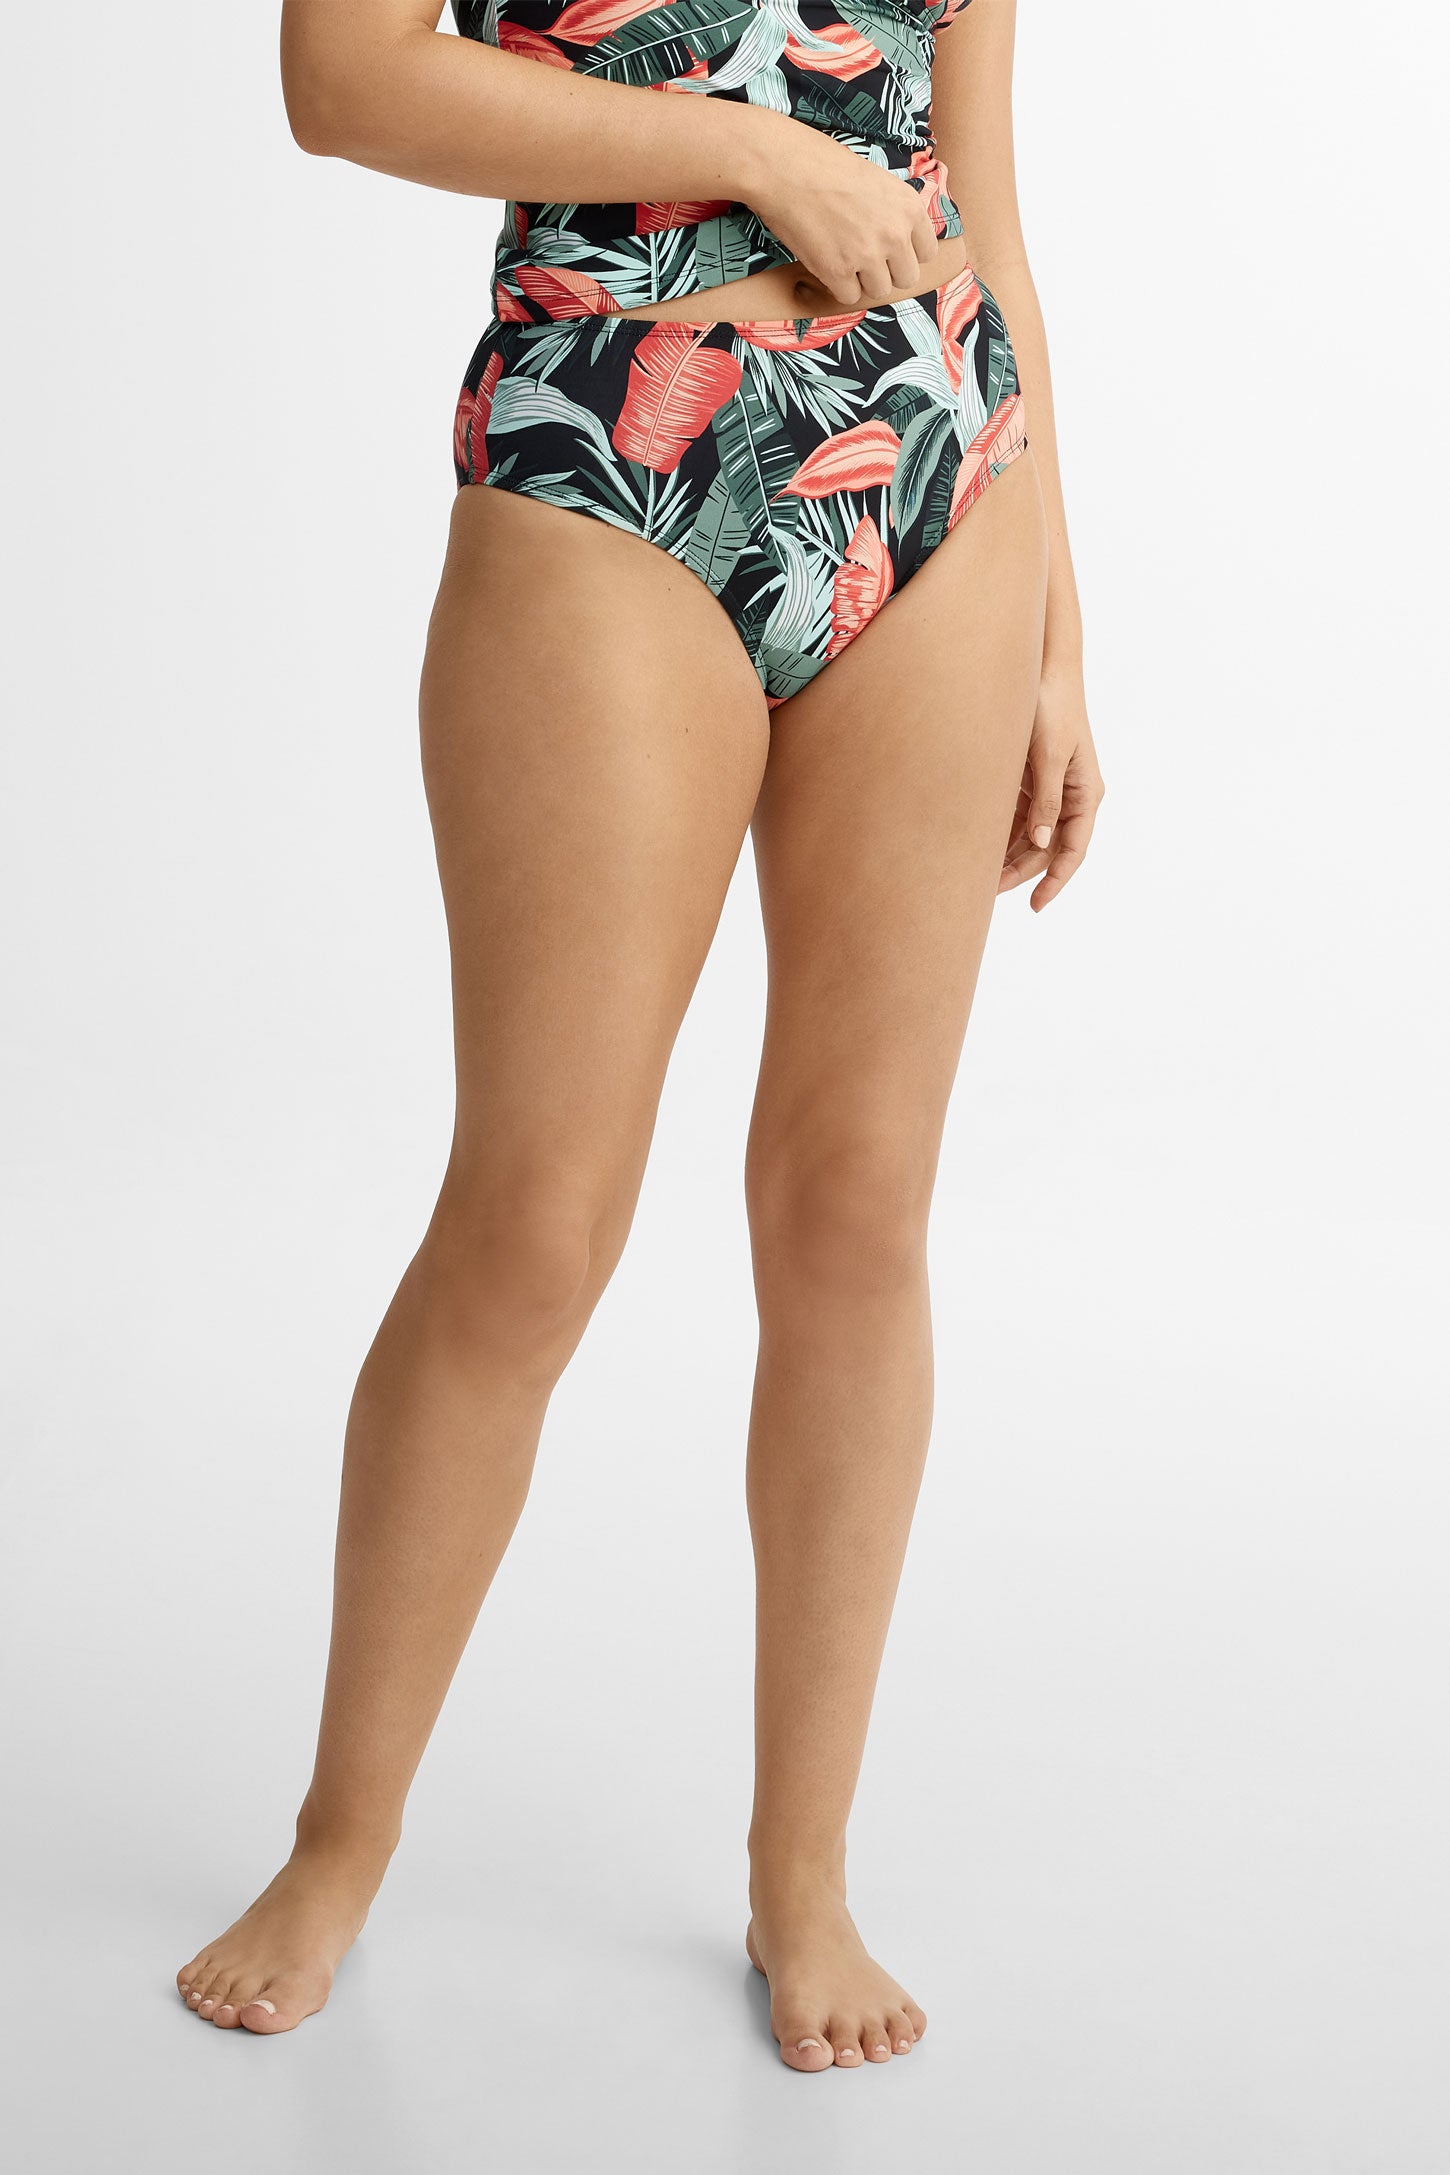 Culotte maillot de bain Bikini taille haute, 2/40$ - Femme && COMBO NOIR